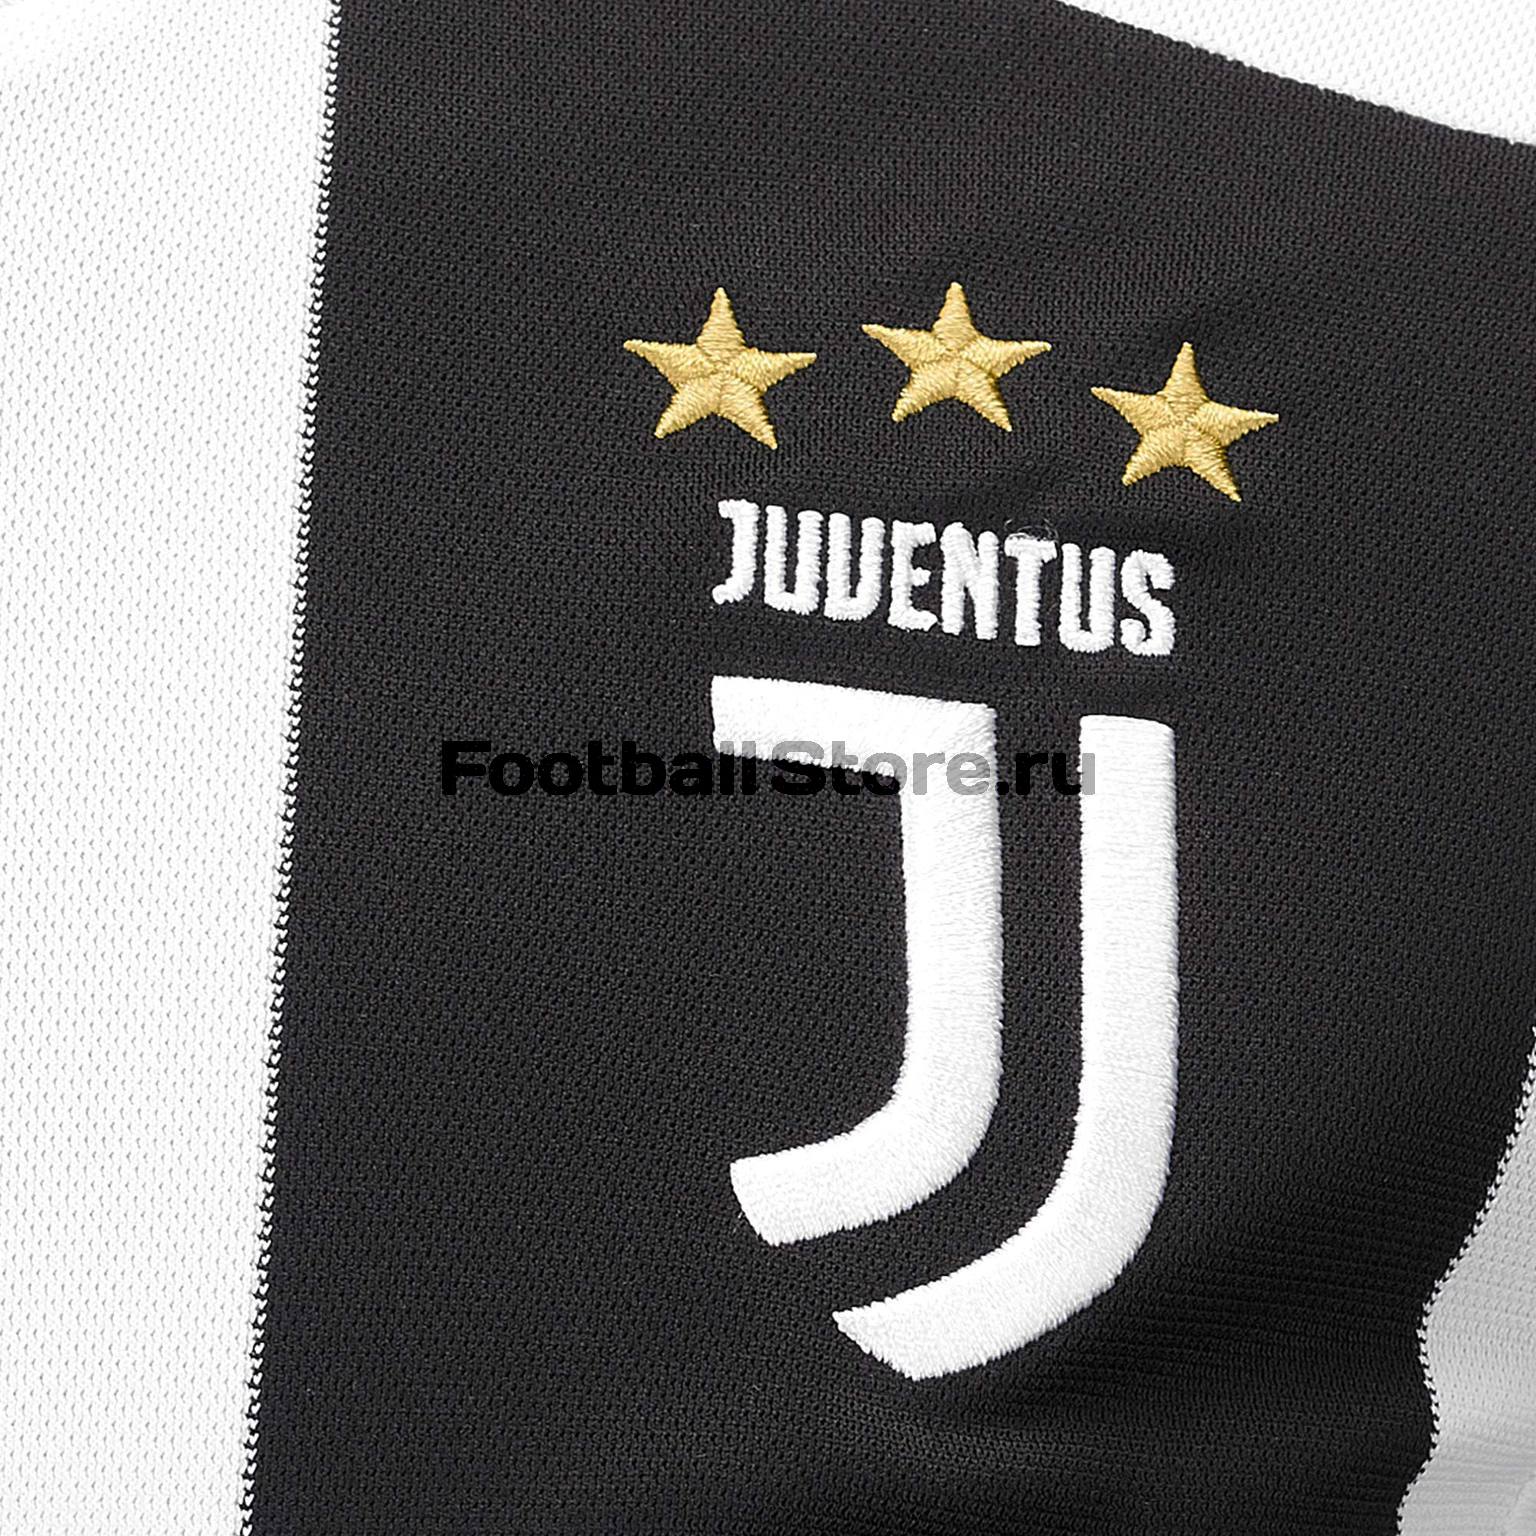 Футболка домашняя подростковая Adidas Juventus 2018/19